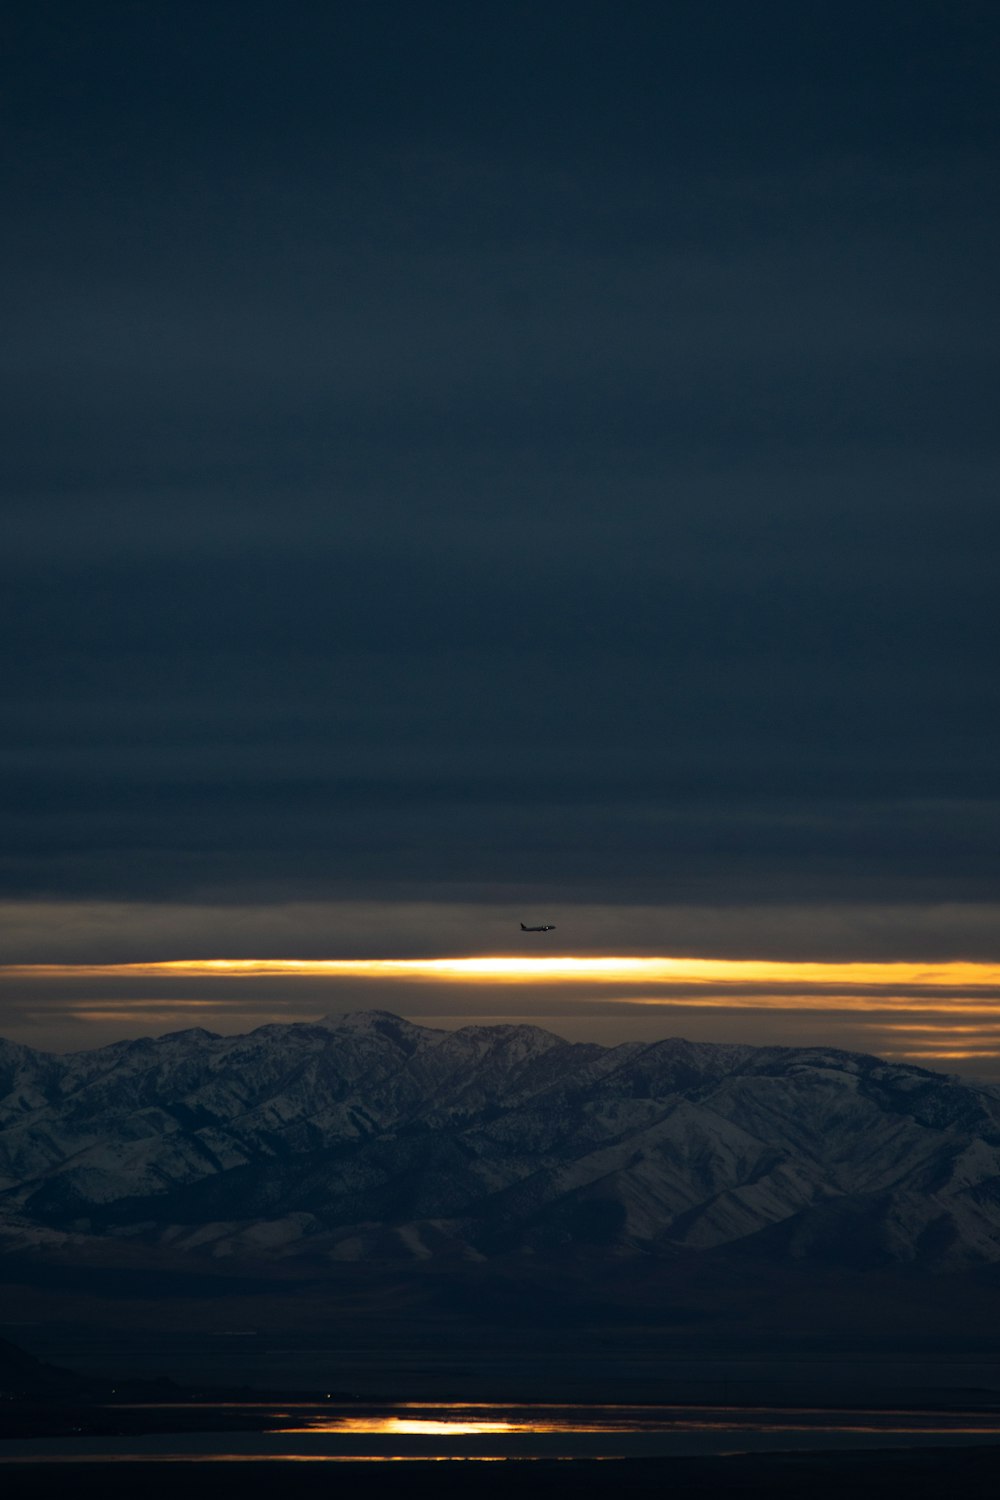 Un avión sobrevolando una cadena montañosa por la noche